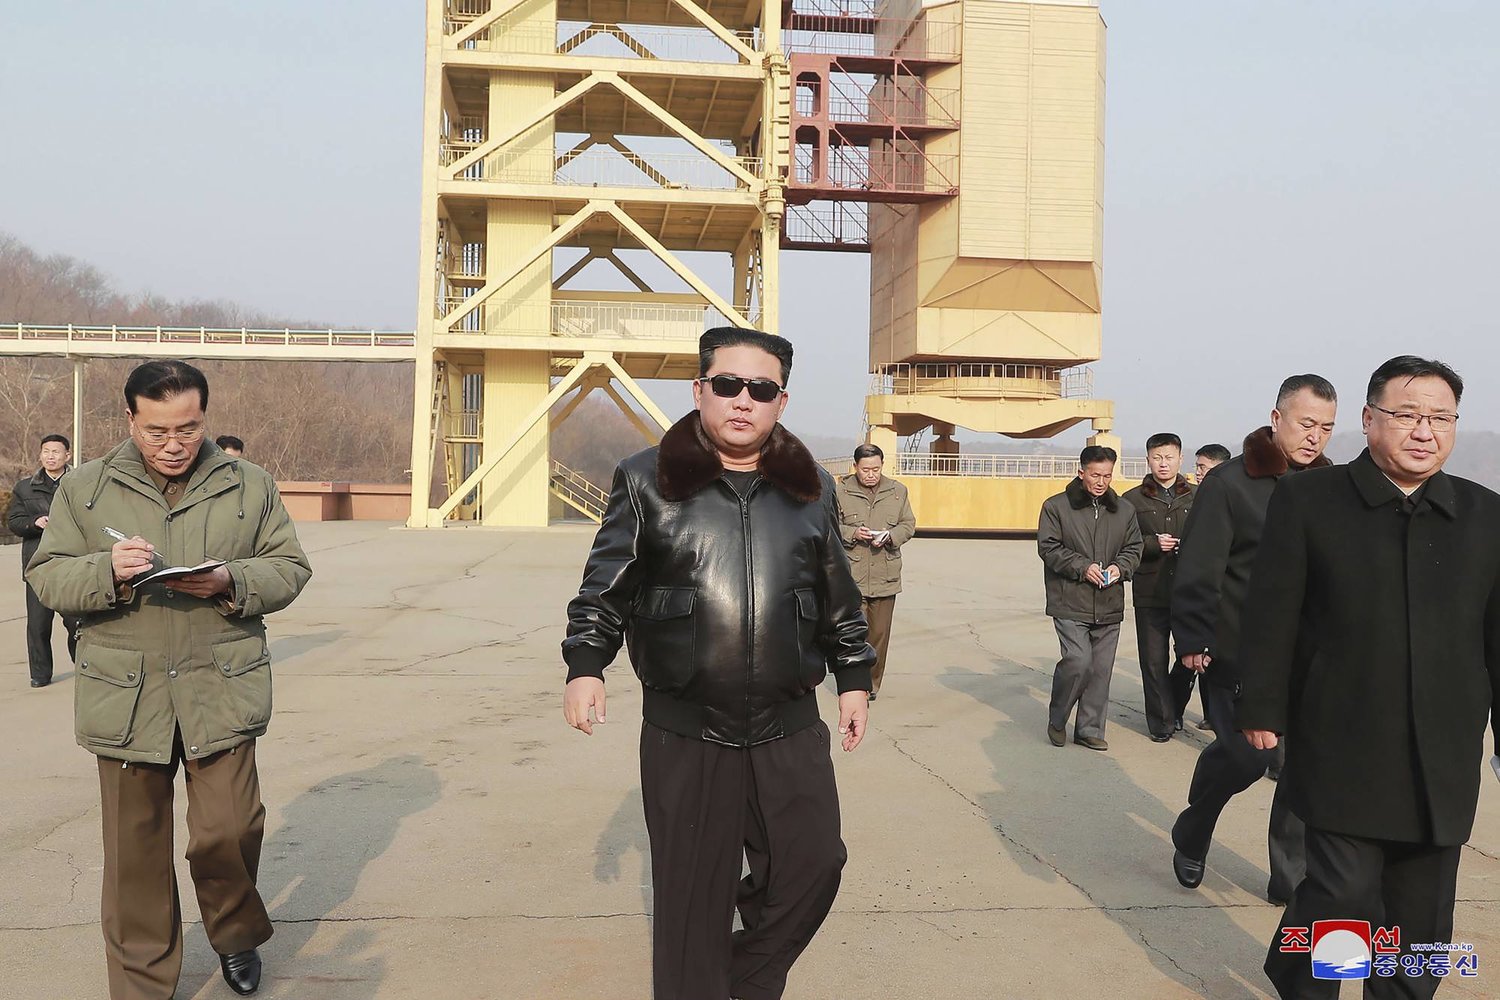 الزعيم الكوري الشمالي كيم جونغ أون خلال زيارته موقعا لإطلاق الأقمار الصناعية (ا.ب)